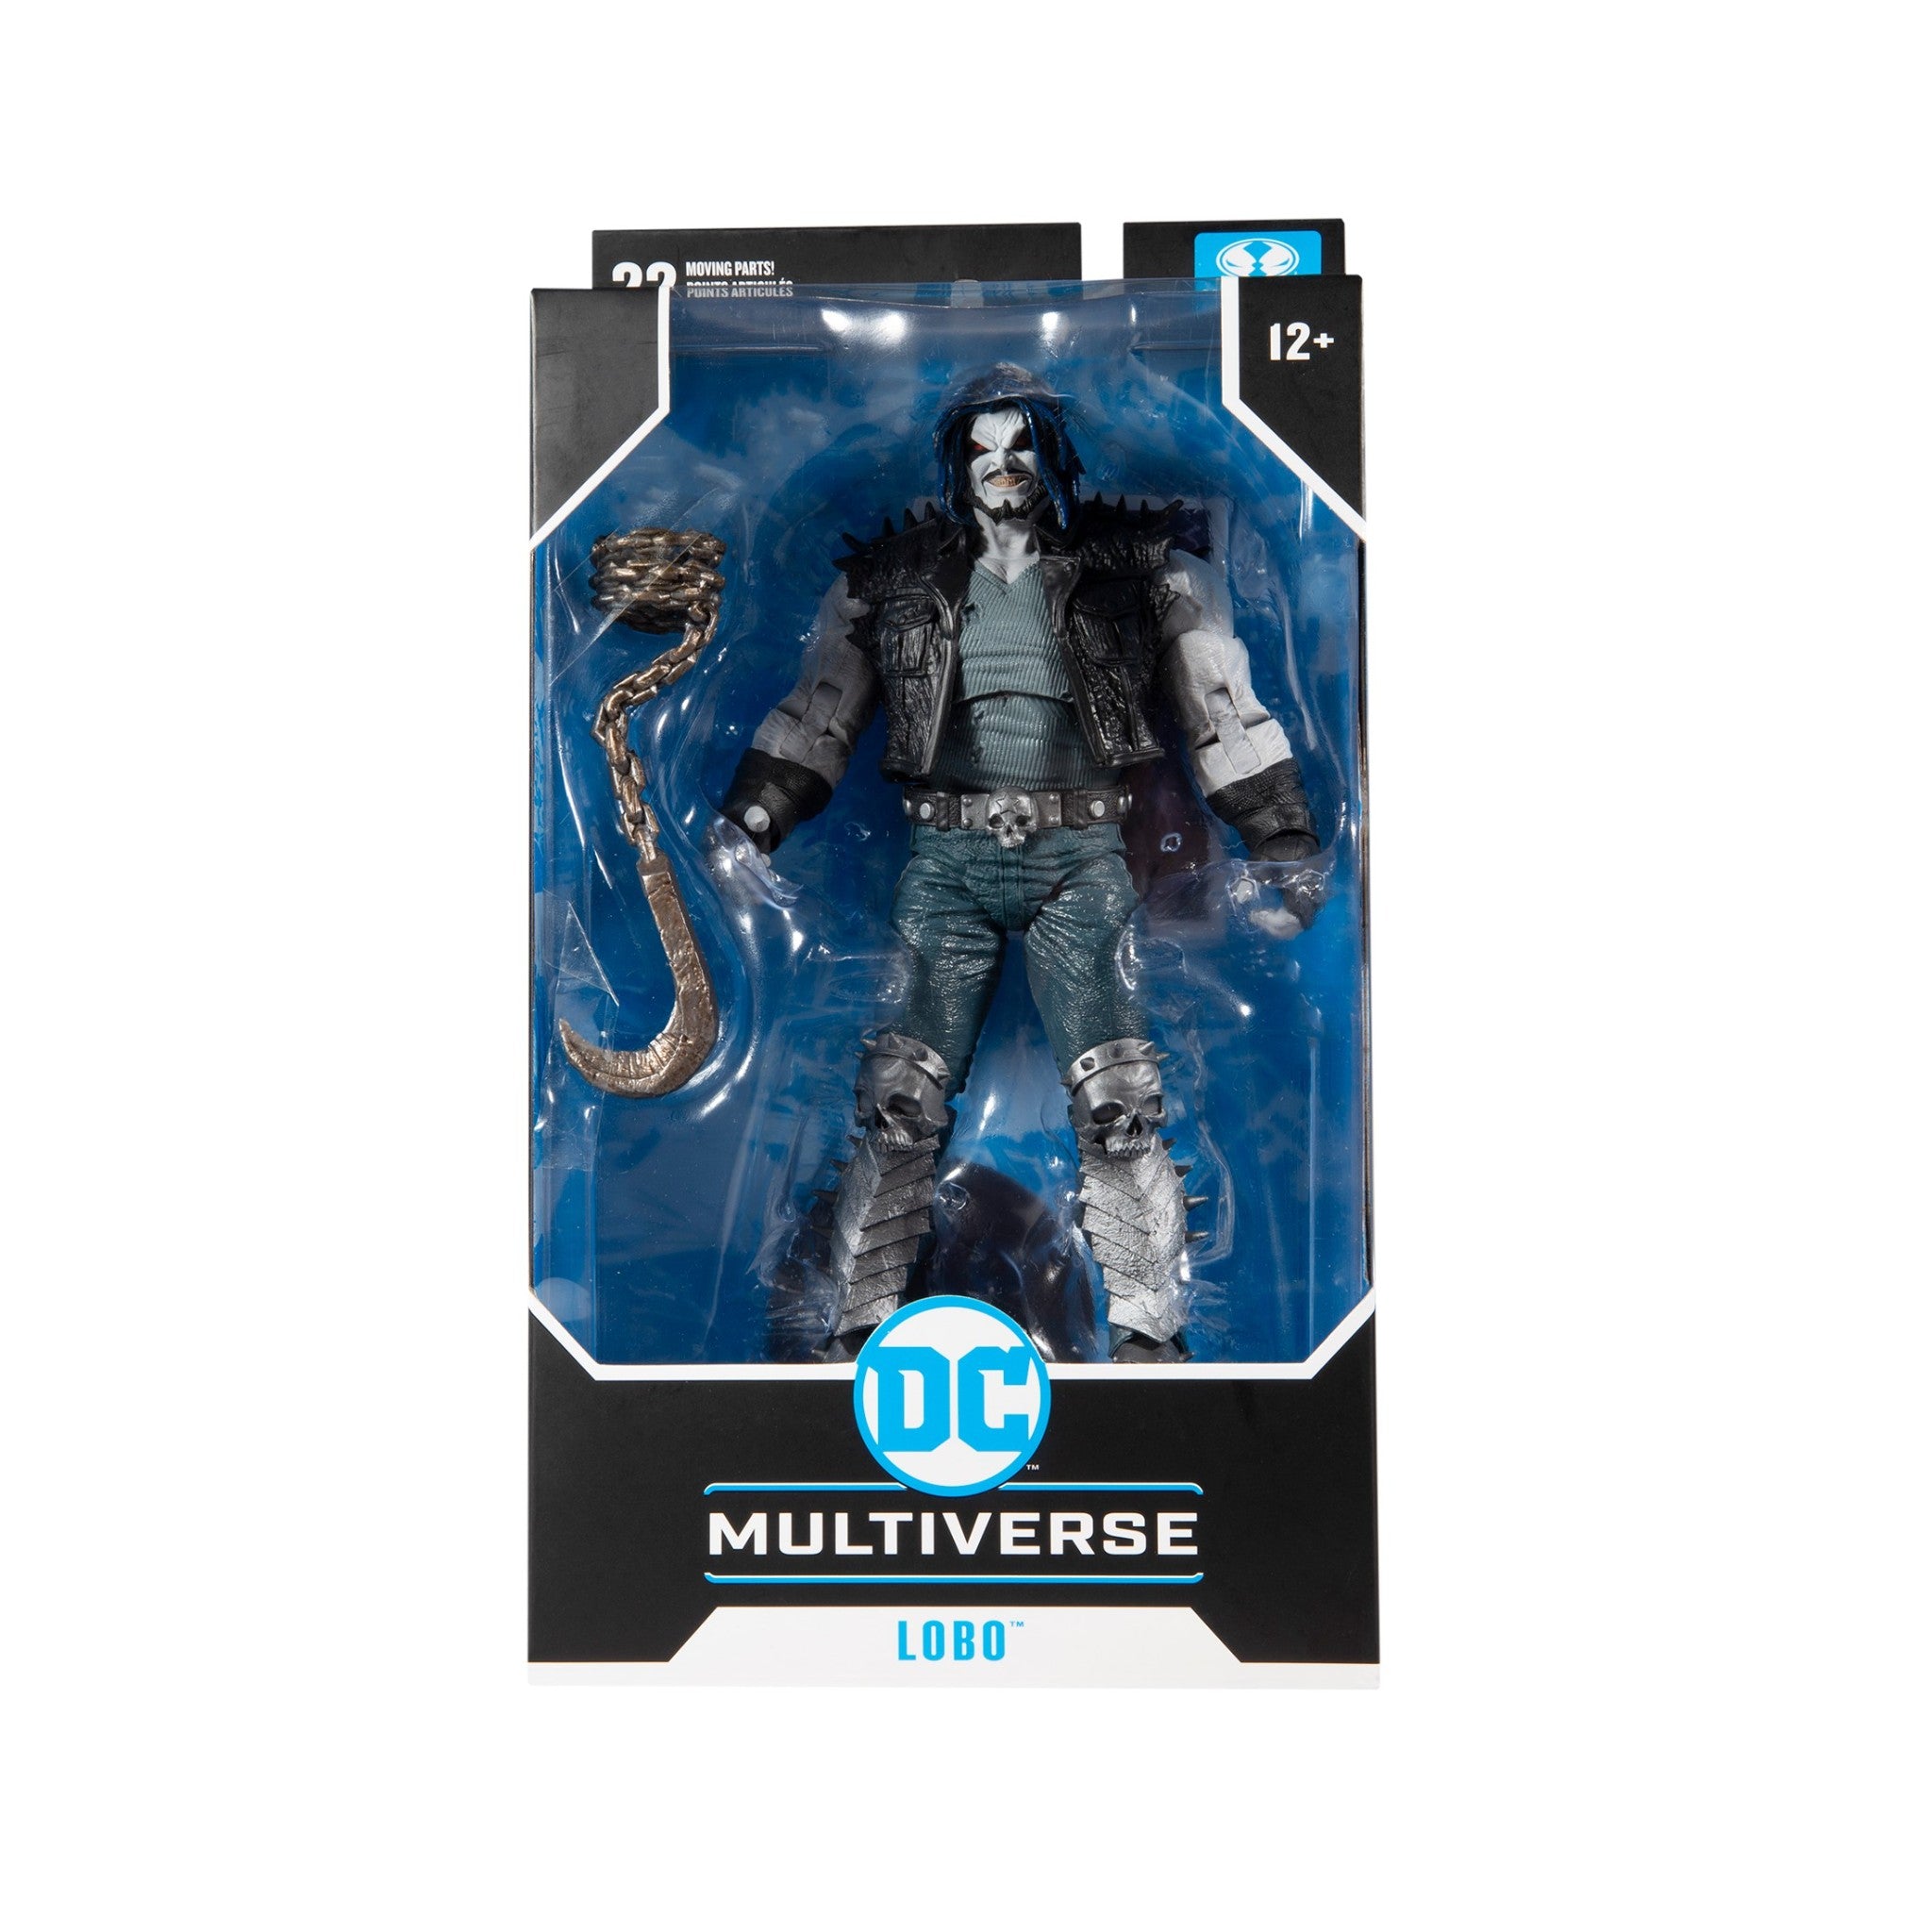 DC Multiverse Lobo DC Rebirth - McFarlane Toys